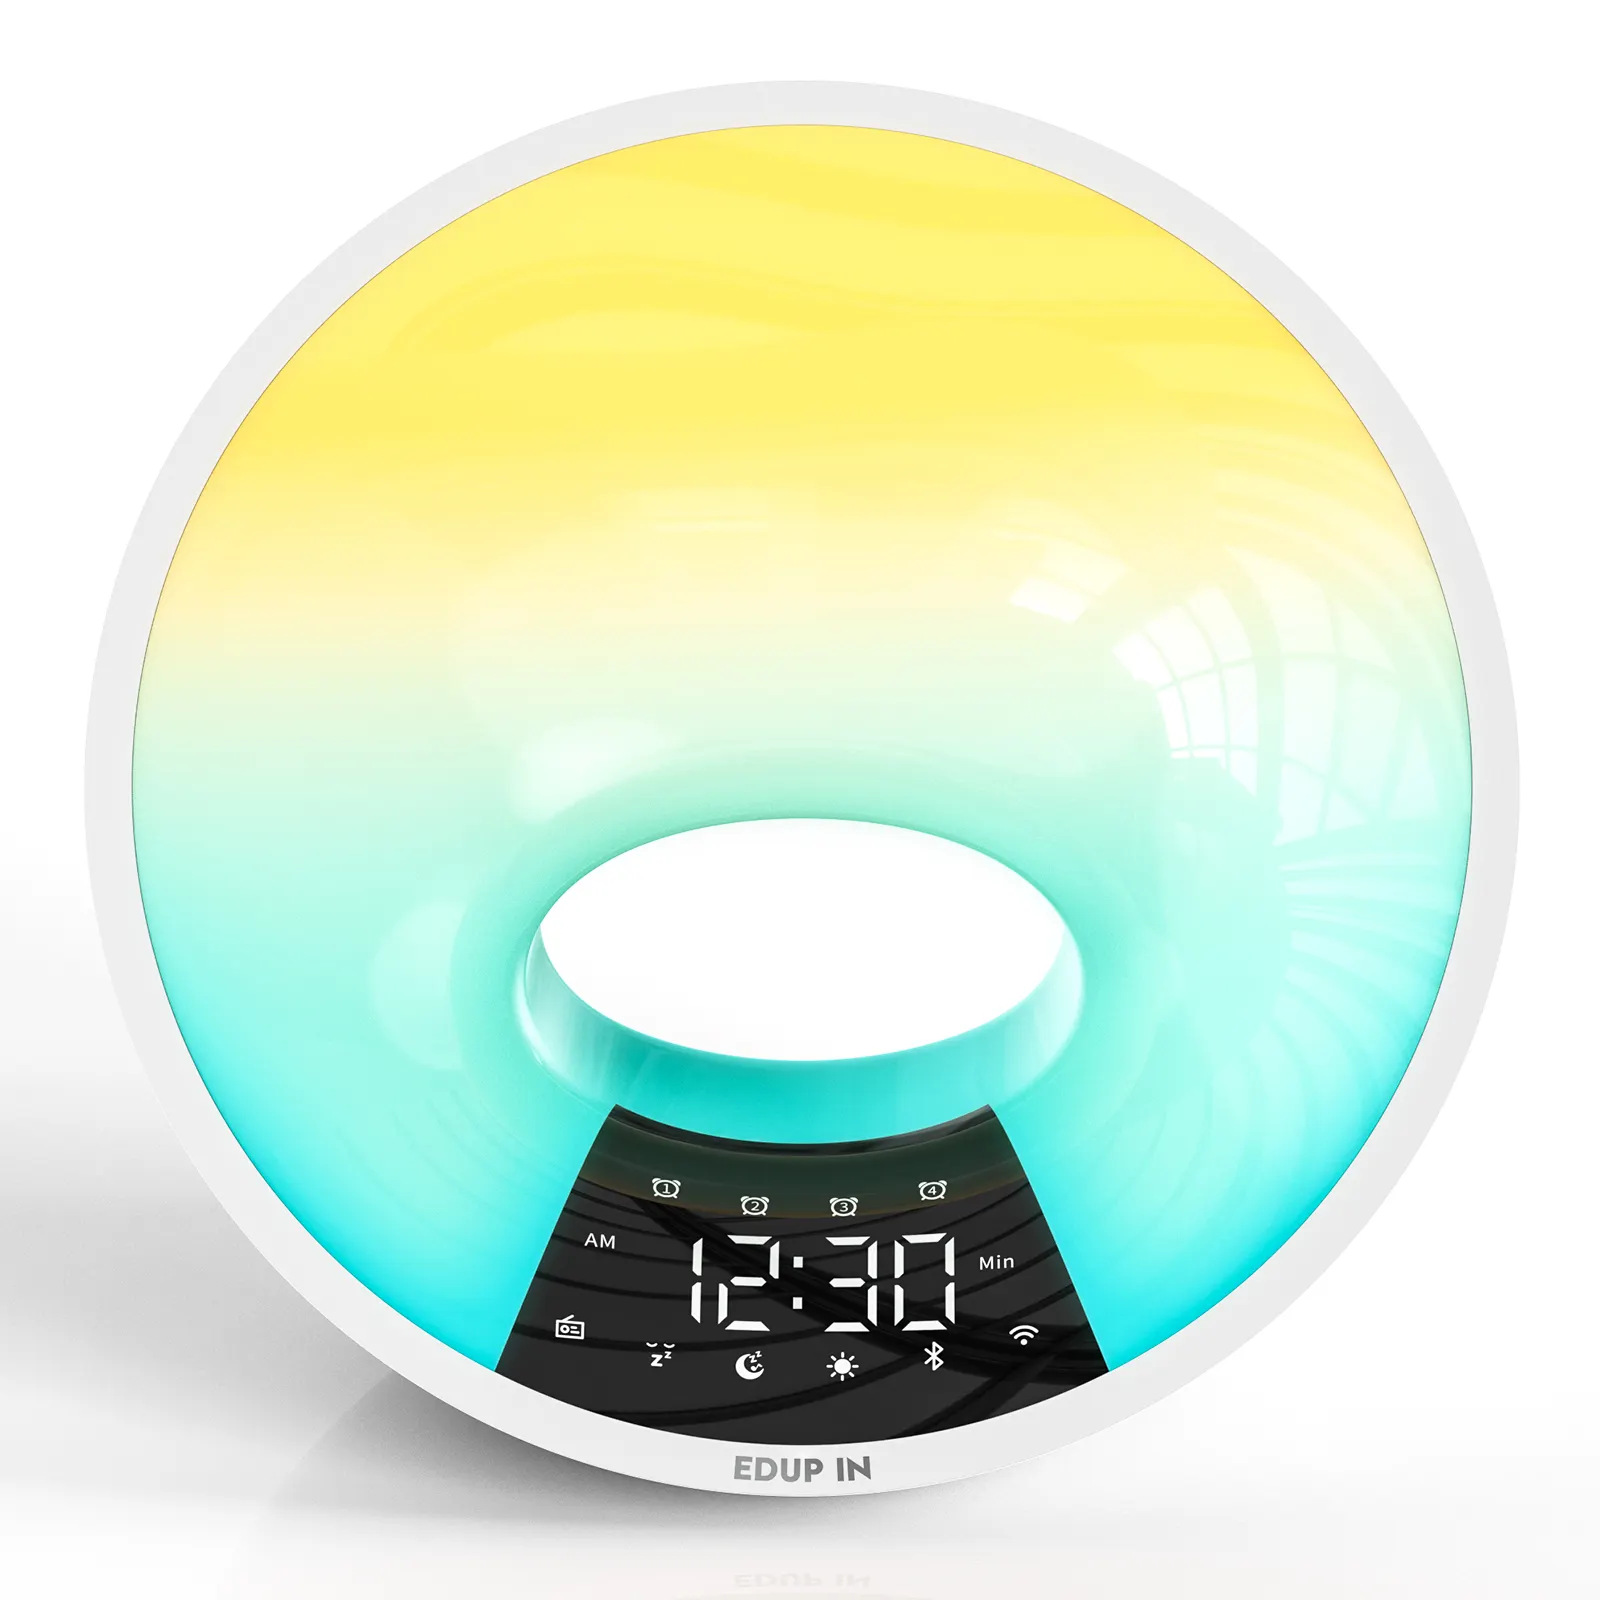 EDUP Chất lượng cao thông minh thức dậy ánh sáng mặt trời mọc đồng hồ báo thức với nhẹ nhàng tiếng ồn trắng cho tăng cường trải nghiệm giấc ngủ